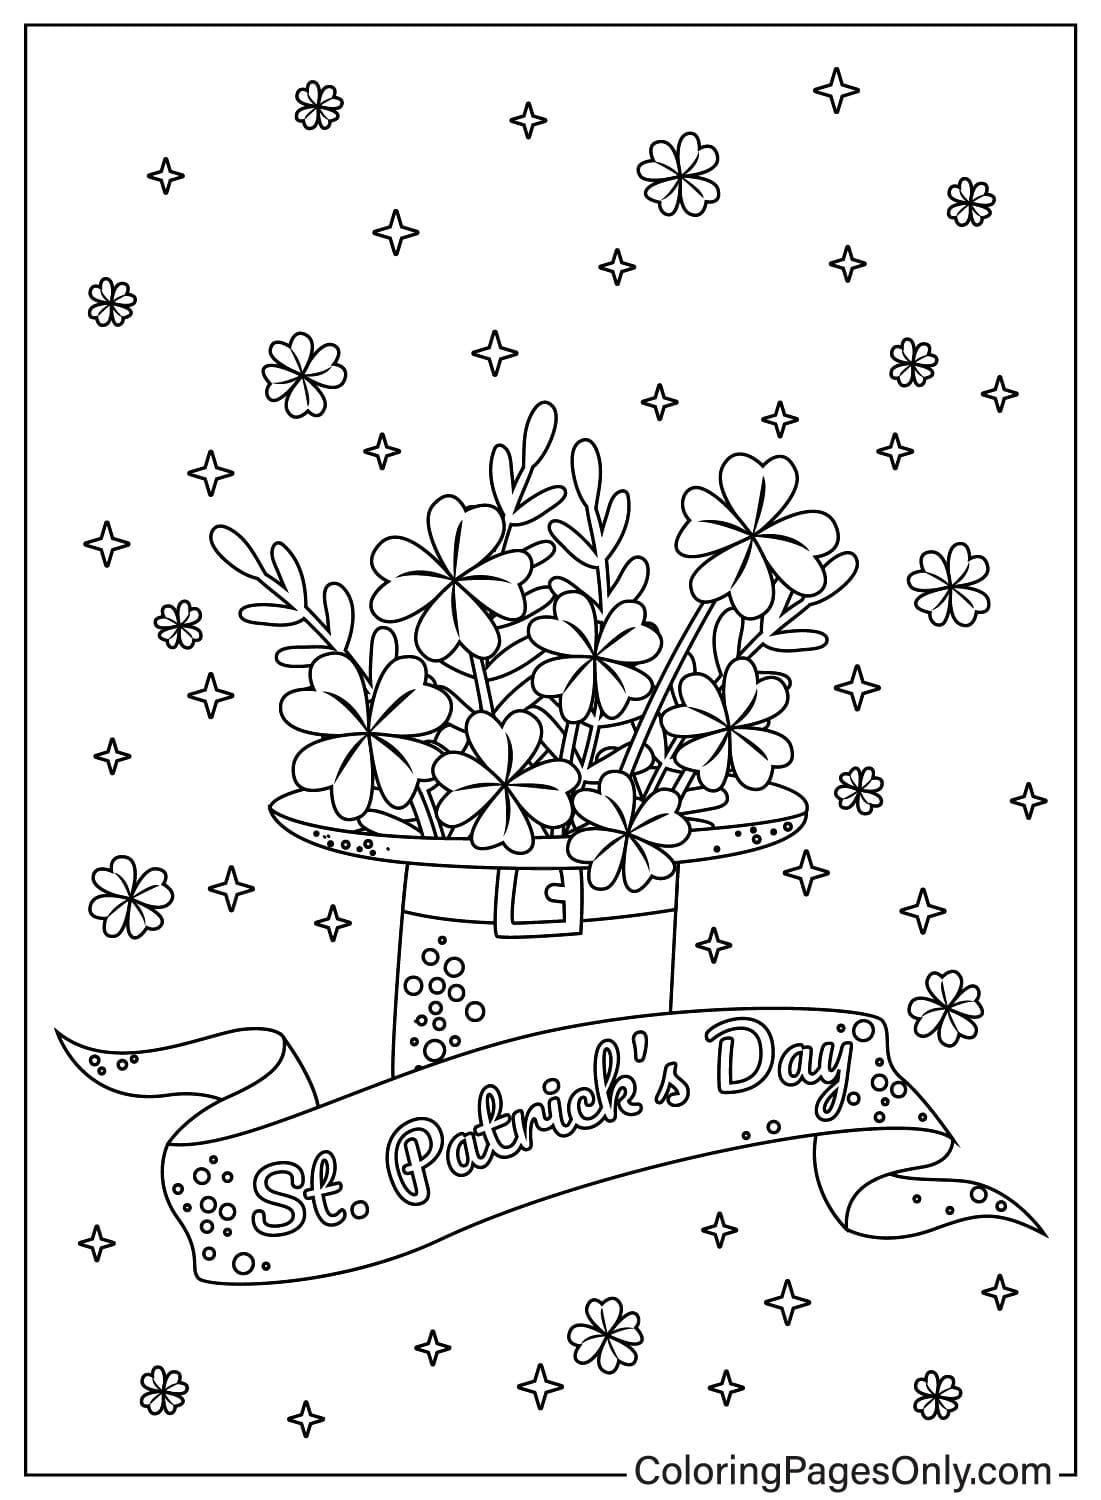 Kleeblatt mit der Malvorlage „Happy St. Patricks Day“ von Shamrock